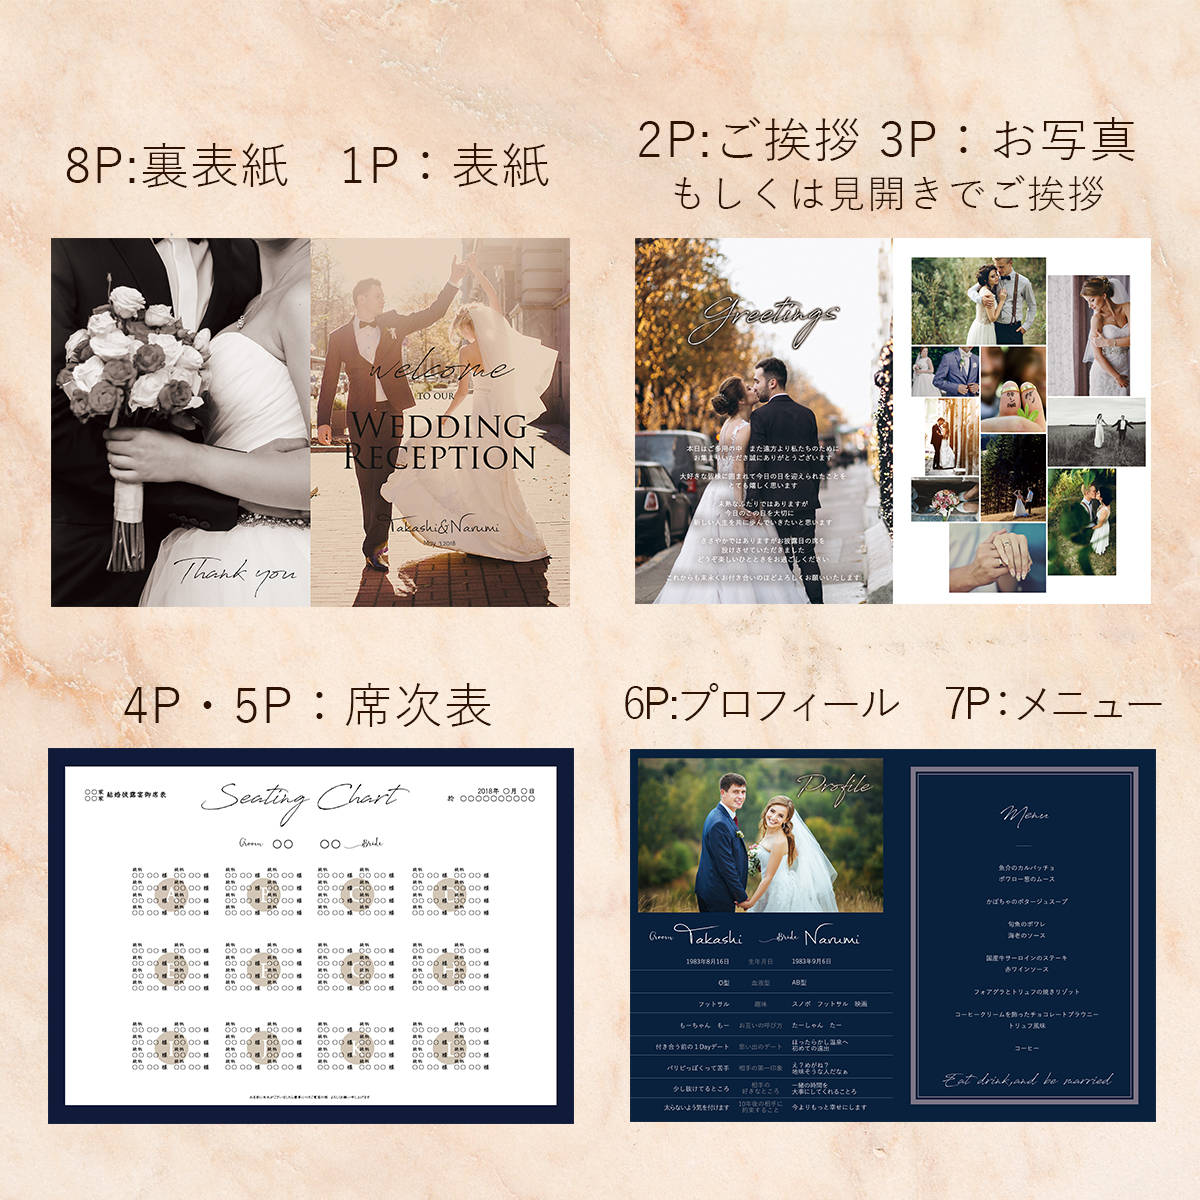 ちゃんりー様専用 結婚式 席次表付き/オリジナルプロフィールブック/8p